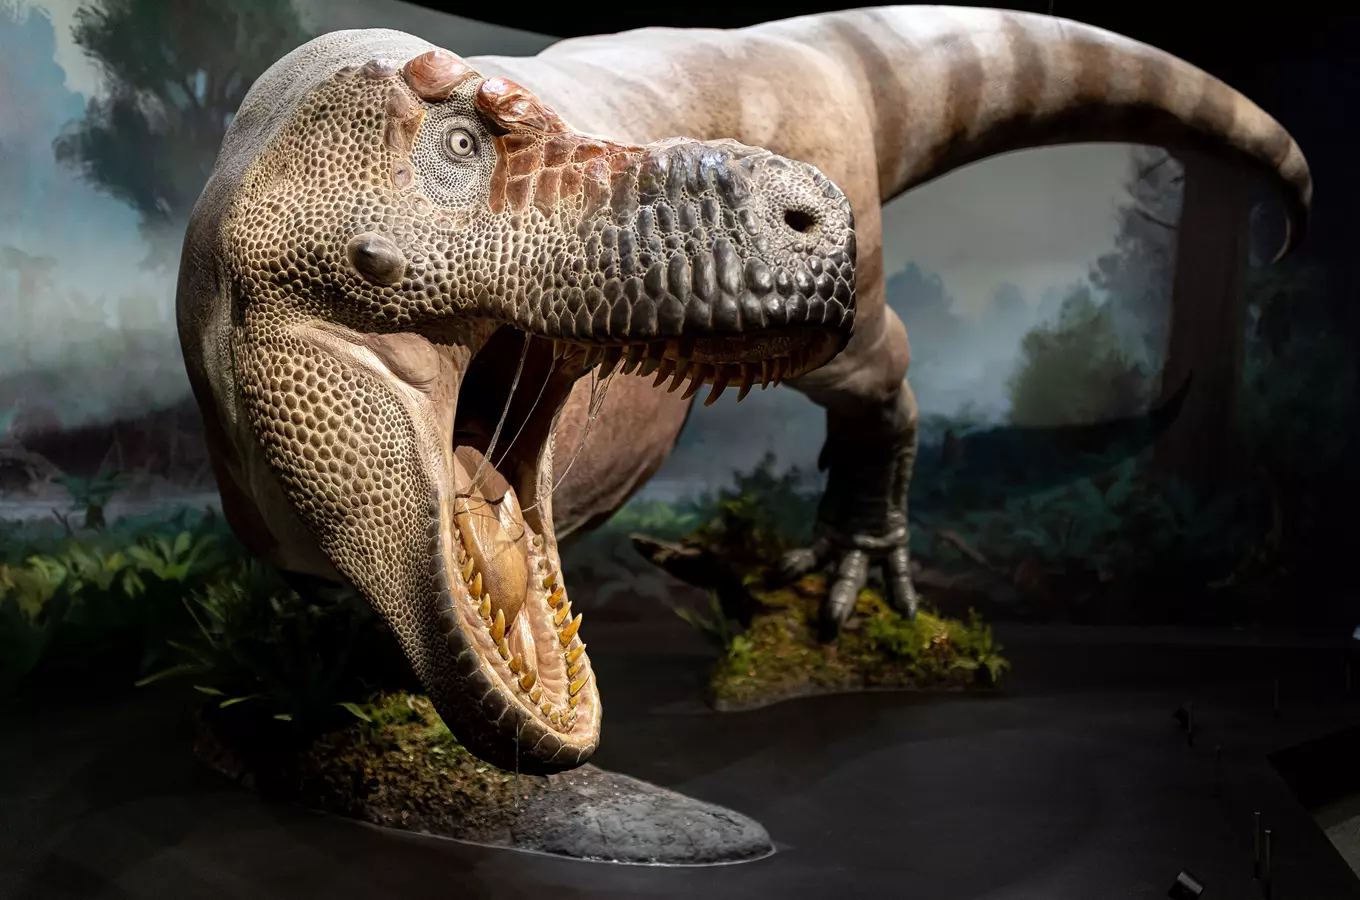 Jedno z největších soukromých muzeí dinosaurů na světě otevírá od října 2021 v Praze